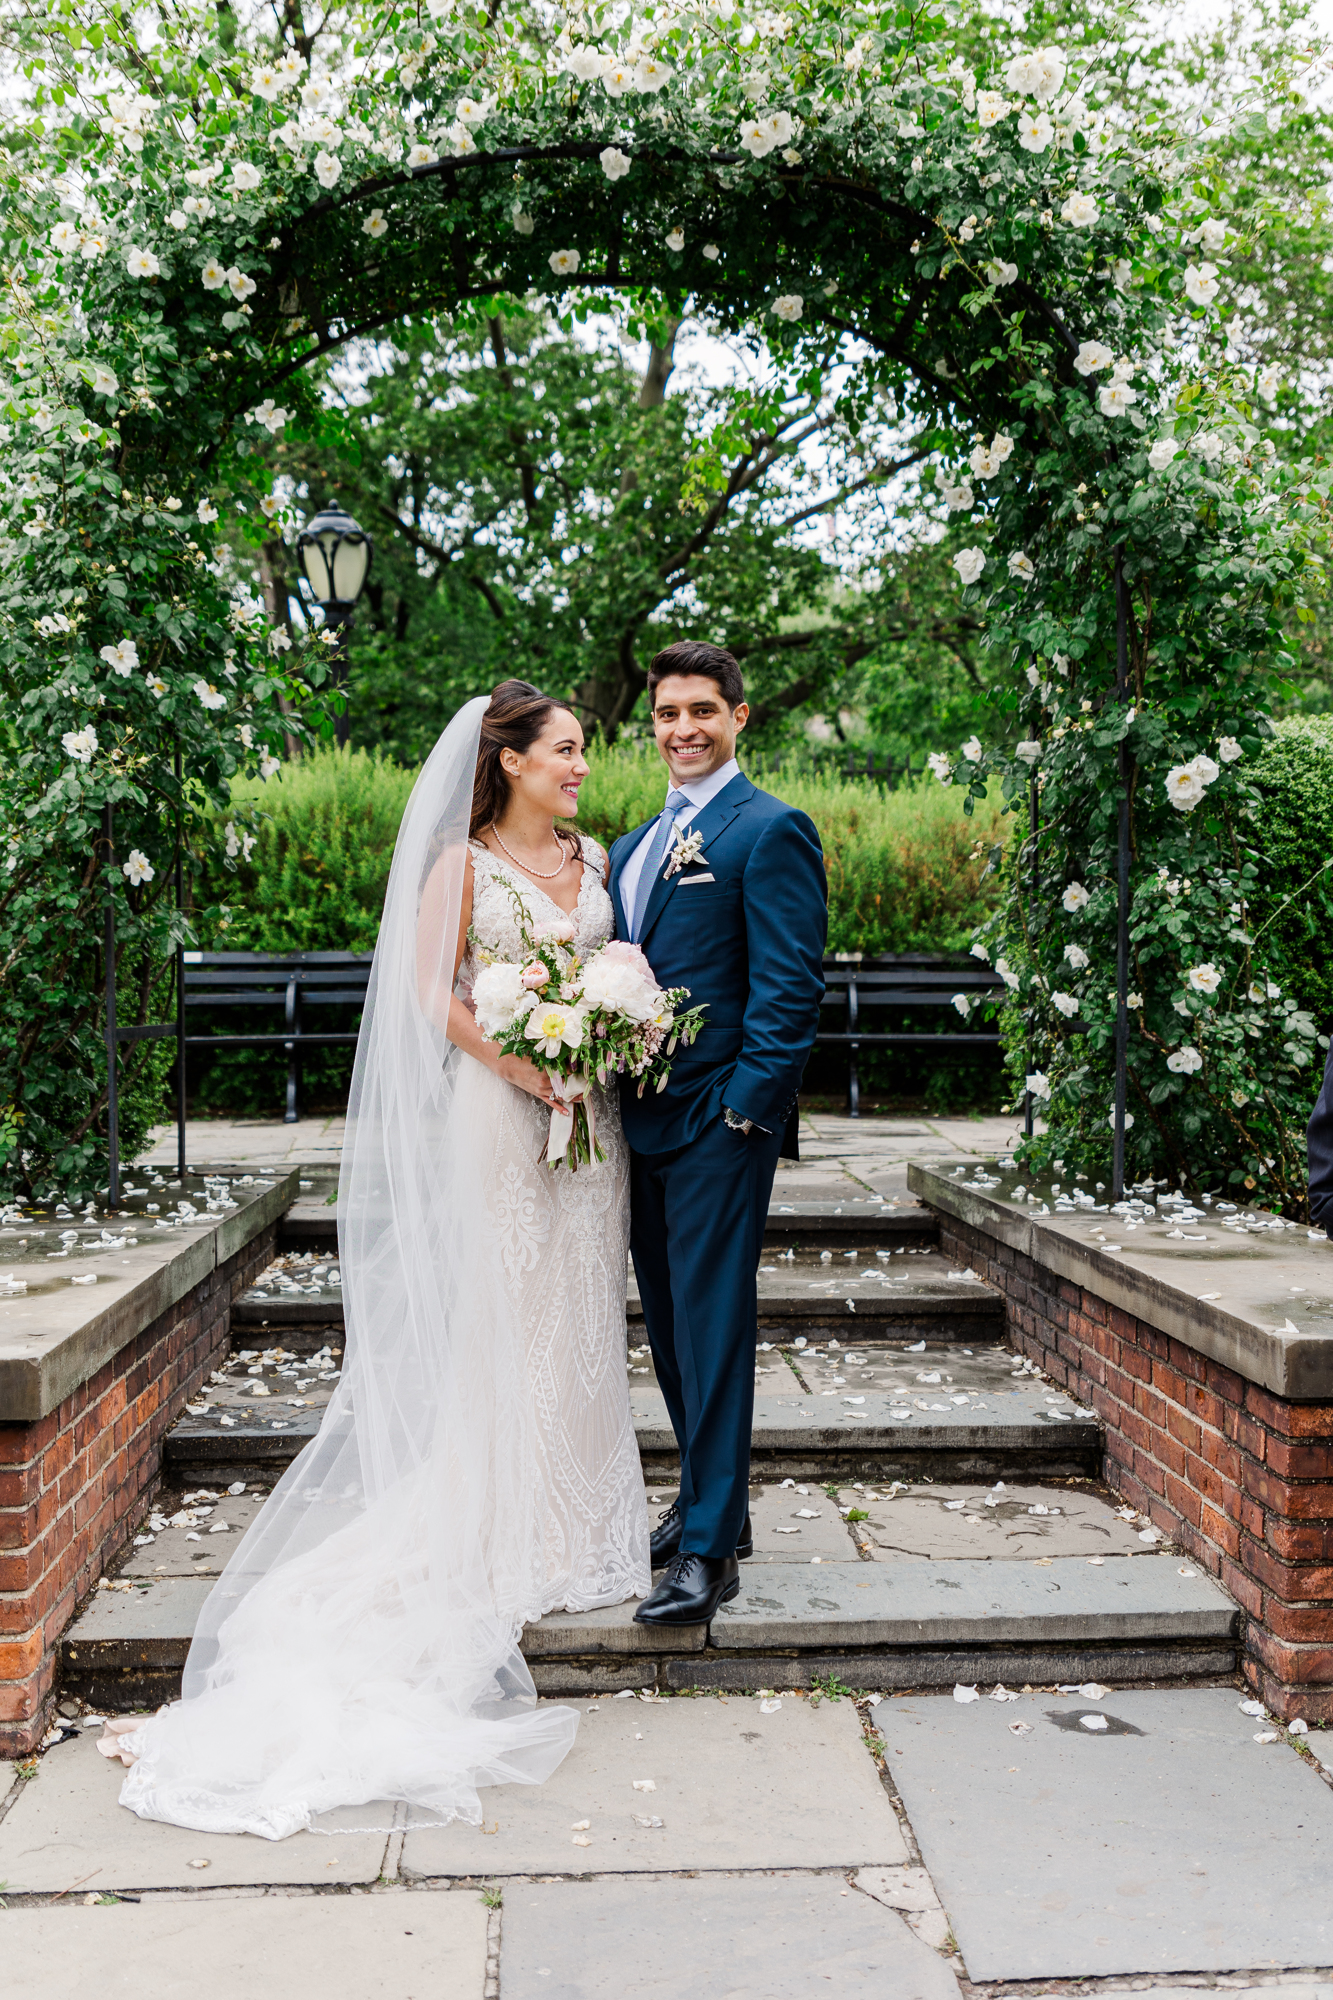 Incredible New York Wedding Photos in Conservatory Garden